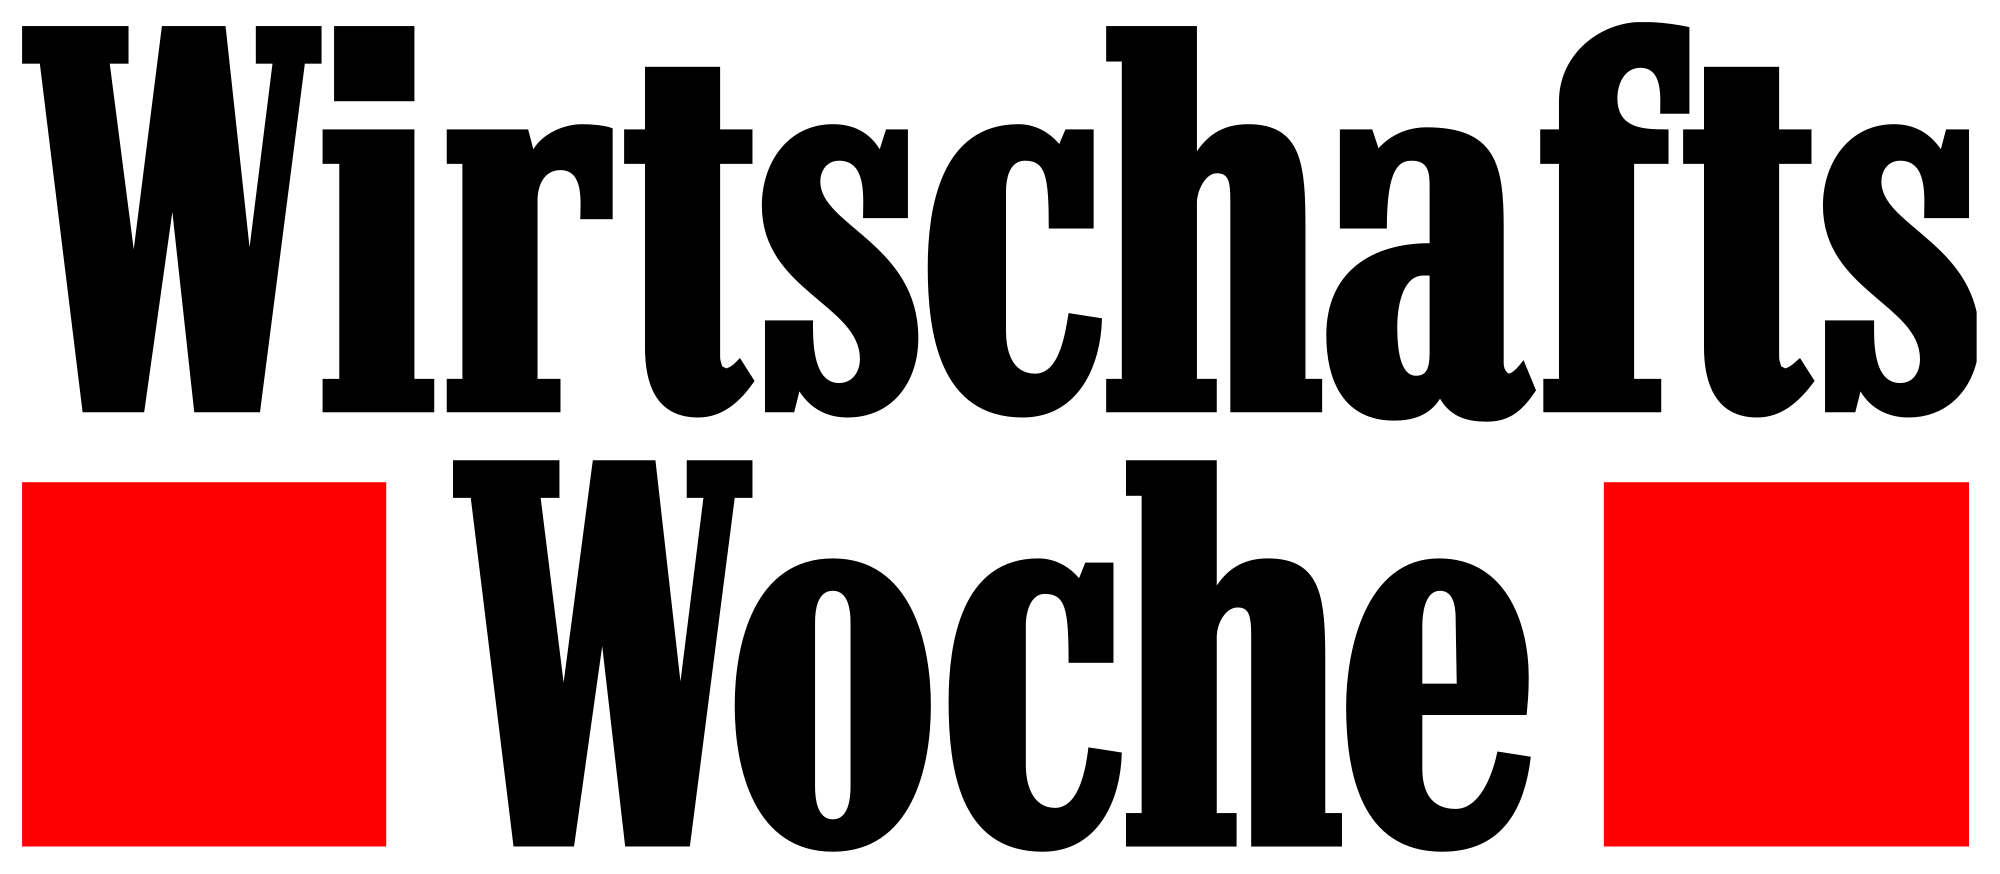 Wirtschaftswoche Logo farbig